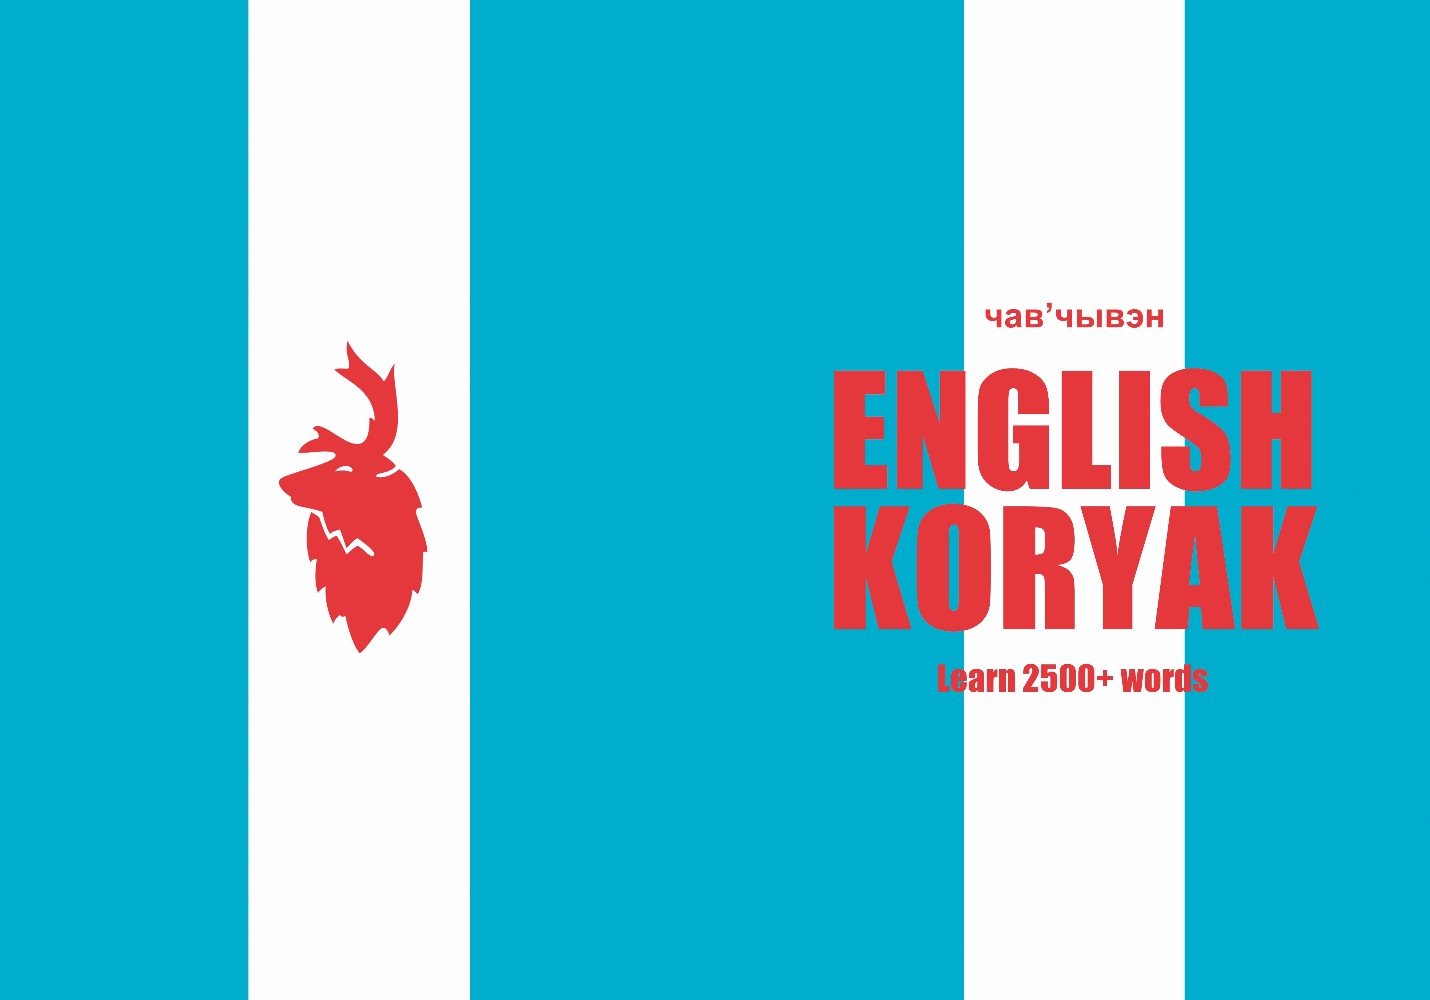 Koryak language learning notebook cover